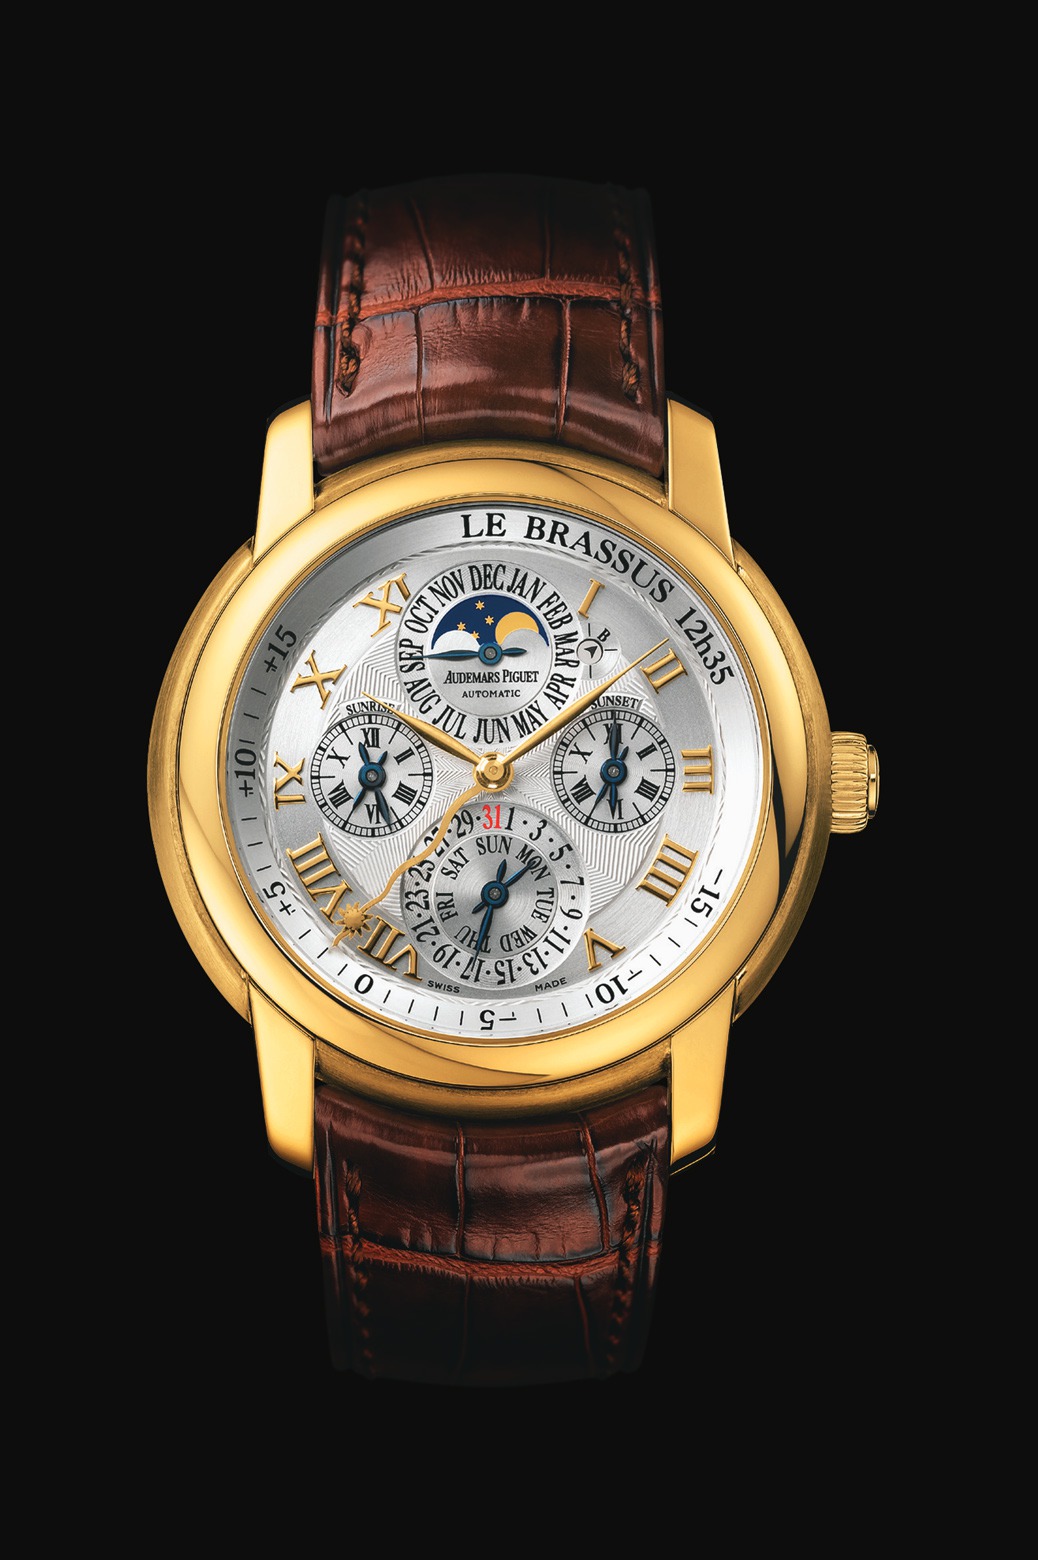 Audemars Piguet Jules Audemars Equation of Time Yellow Gold watch REF: 26003BA.OO.D088CR.01